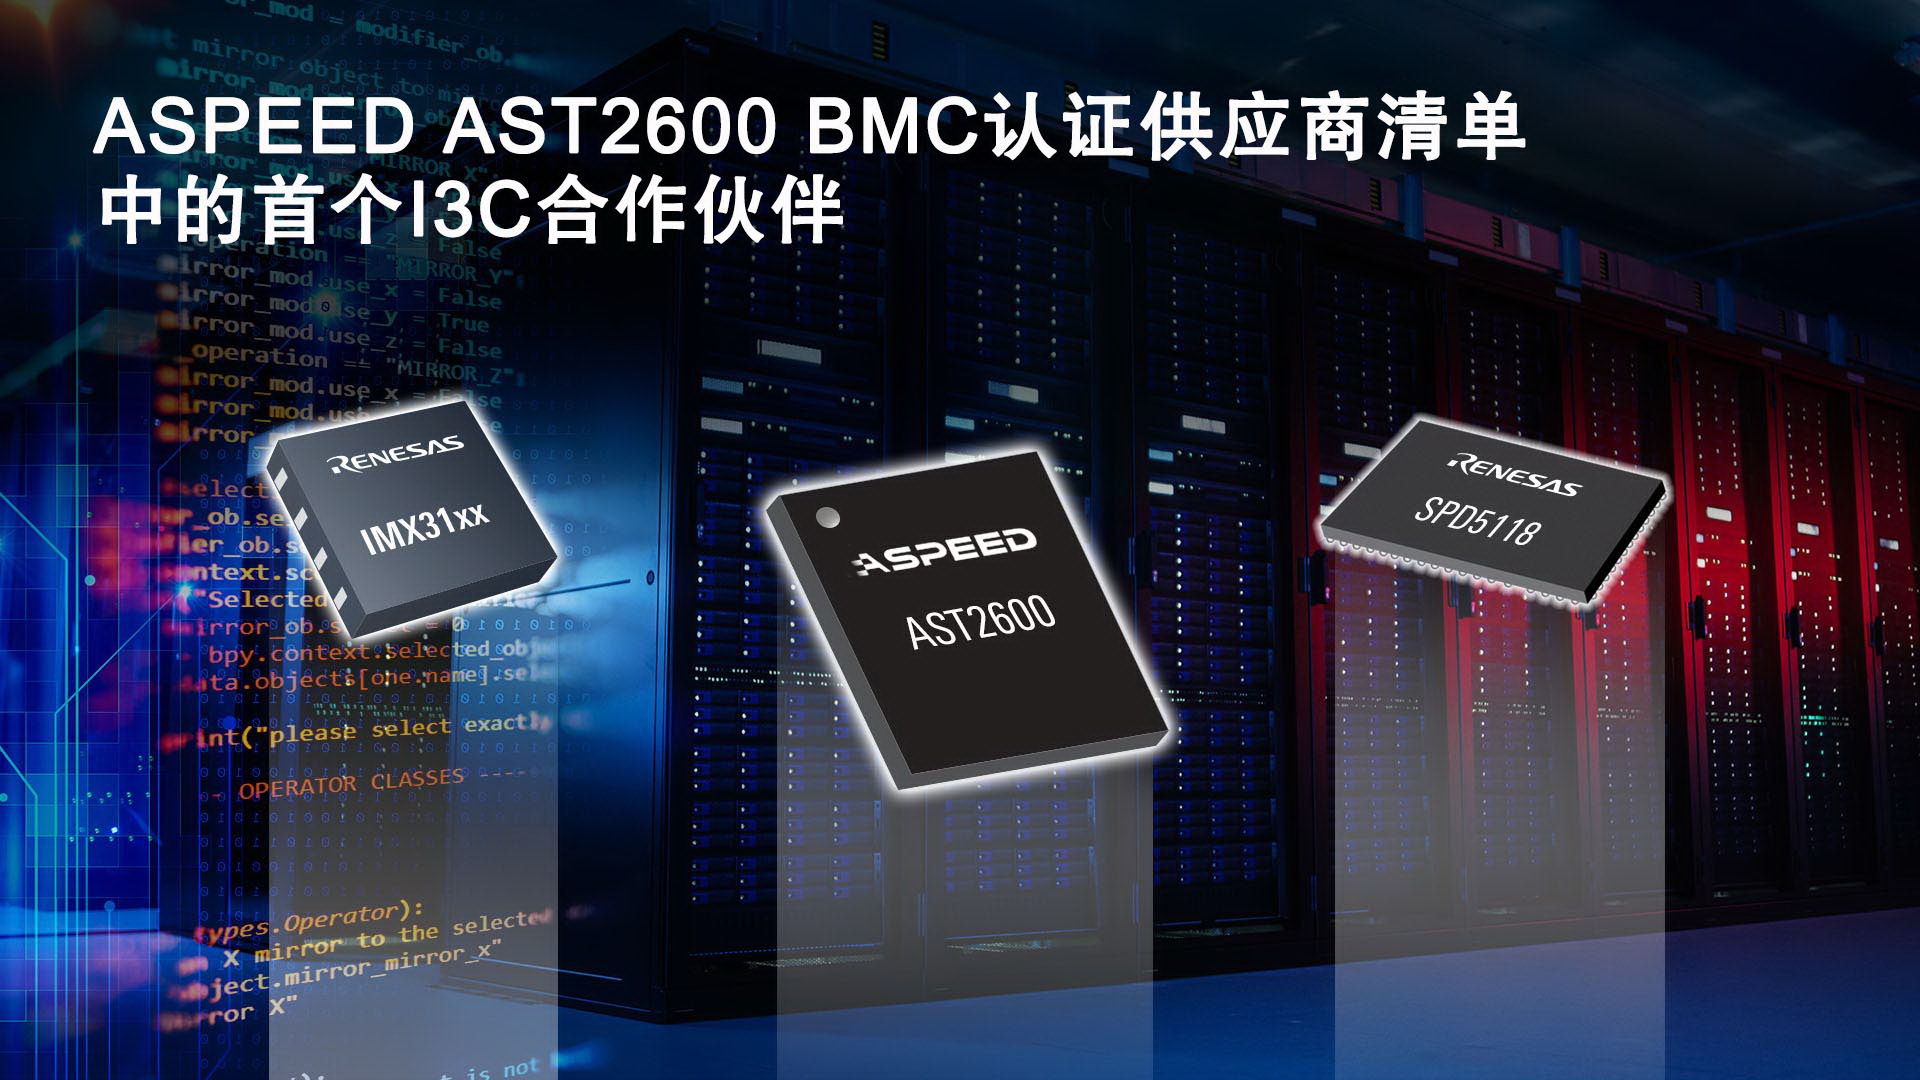 瑞萨电子I3C总线扩展和SPD集线器产品通过ASPEED AST2600基板管理控制器认证